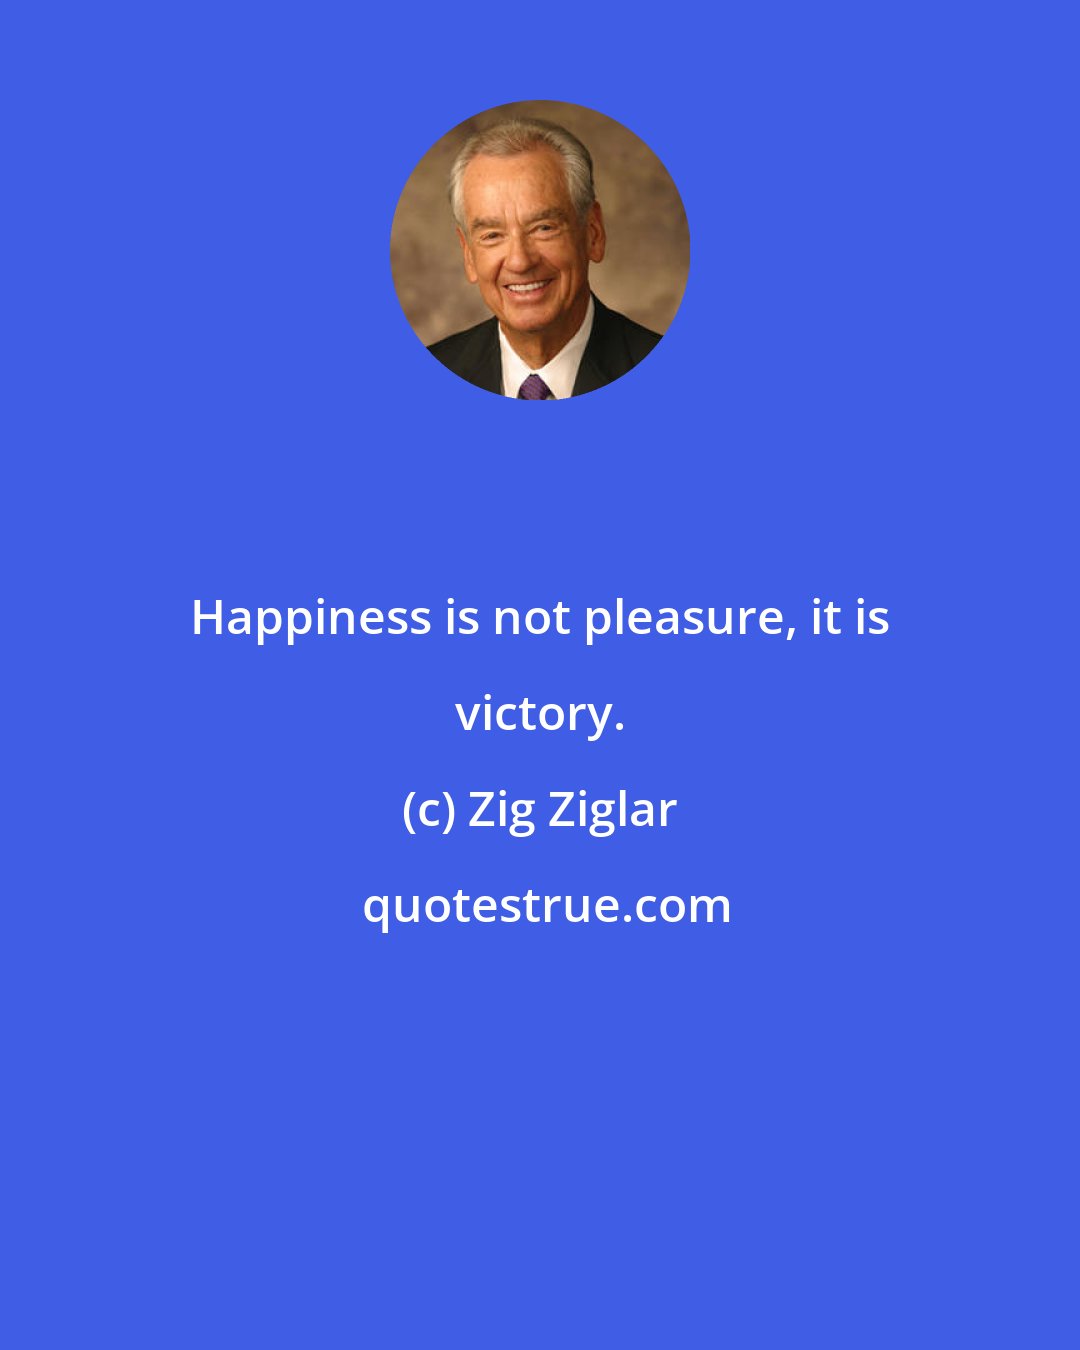 Zig Ziglar: Happiness is not pleasure, it is victory.